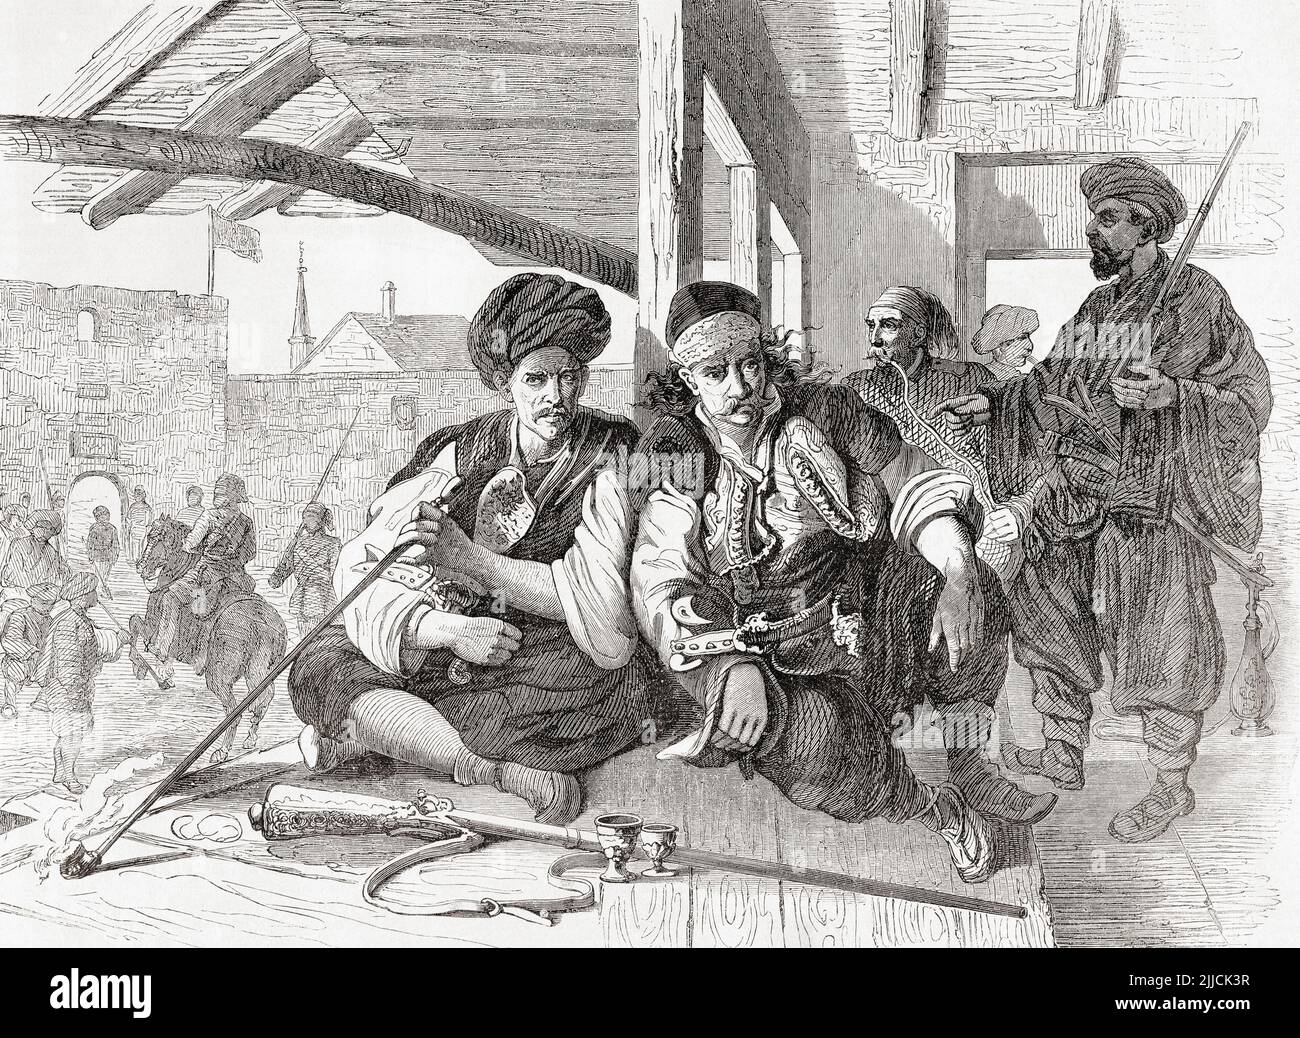 Bashi-bazouks au café. Un bachibouzouk ou bachibouzouk (du başıbozuk turc, littéralement « tête formée ») était un cavalryman mercenaire de l'armée de l'Empire ottoman, avec un armement non normalisé. Ils avaient une réputation de bravoure, mais aussi de groupe indiscipliné et brutal. De l'Univers illustrae, publié Paris, 1859 Banque D'Images